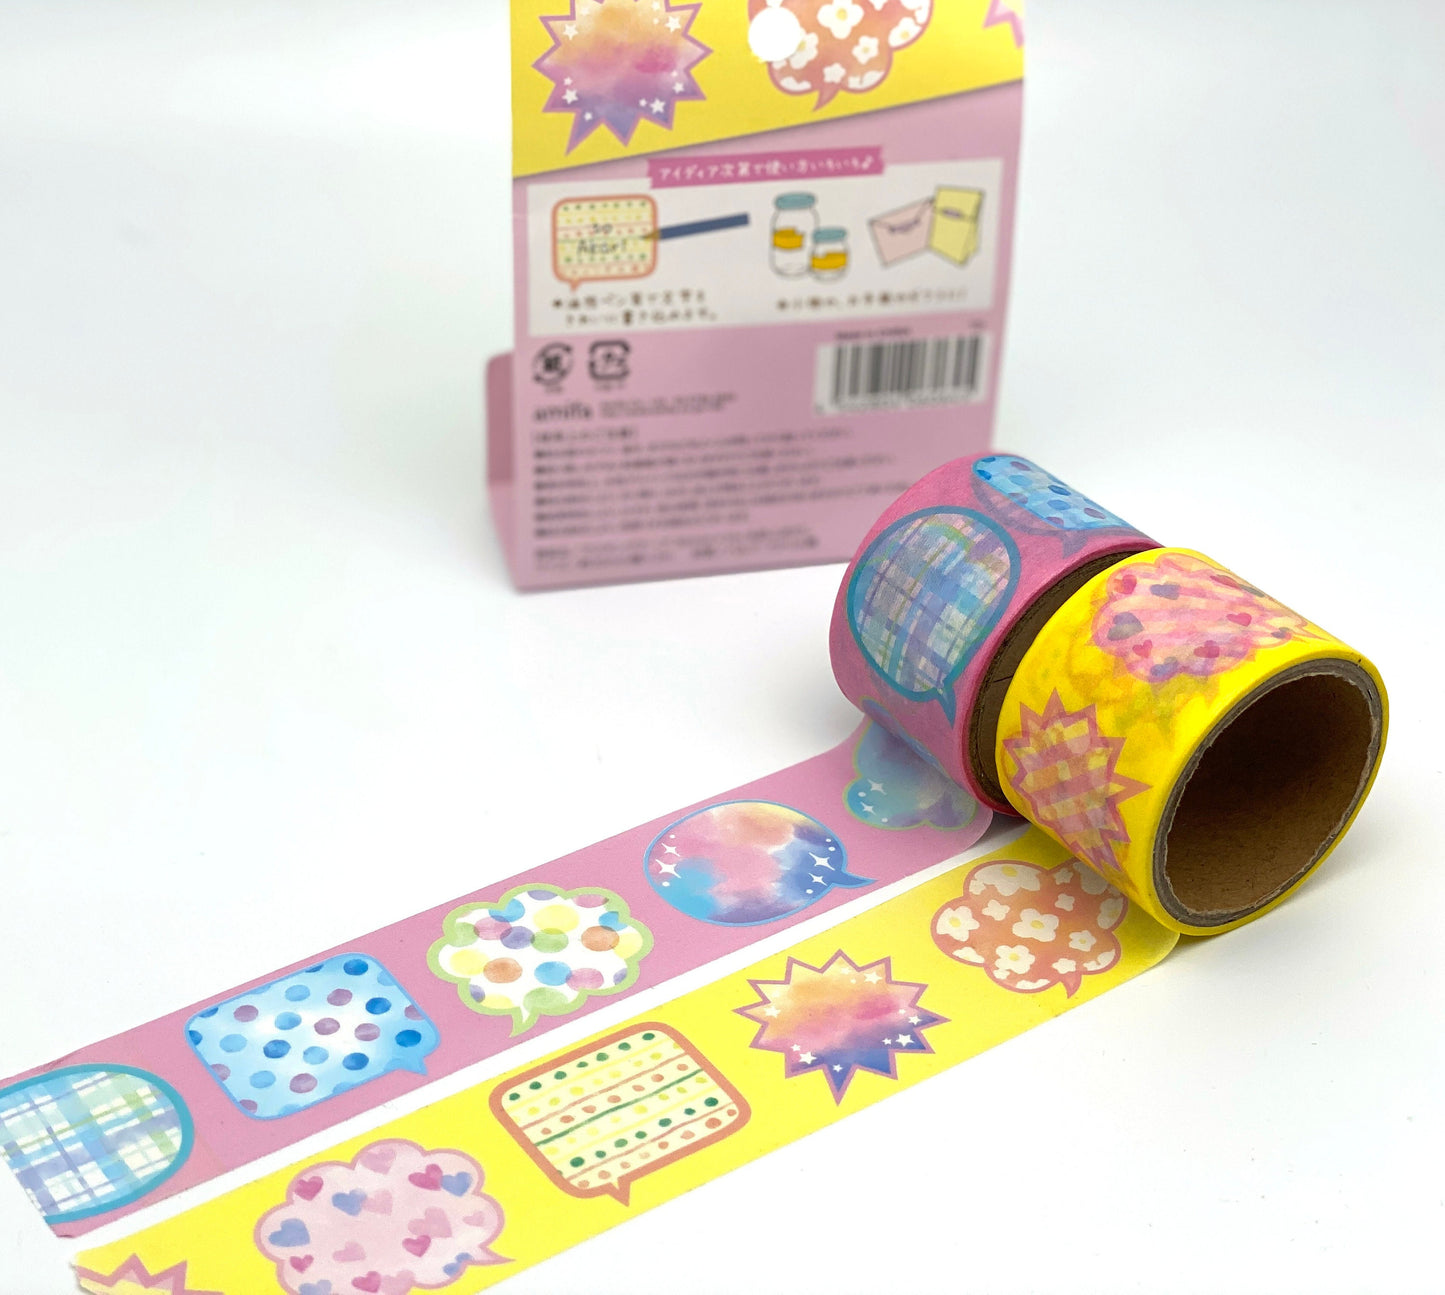 Etiketten Tape Washi Tape 30mm x 3M